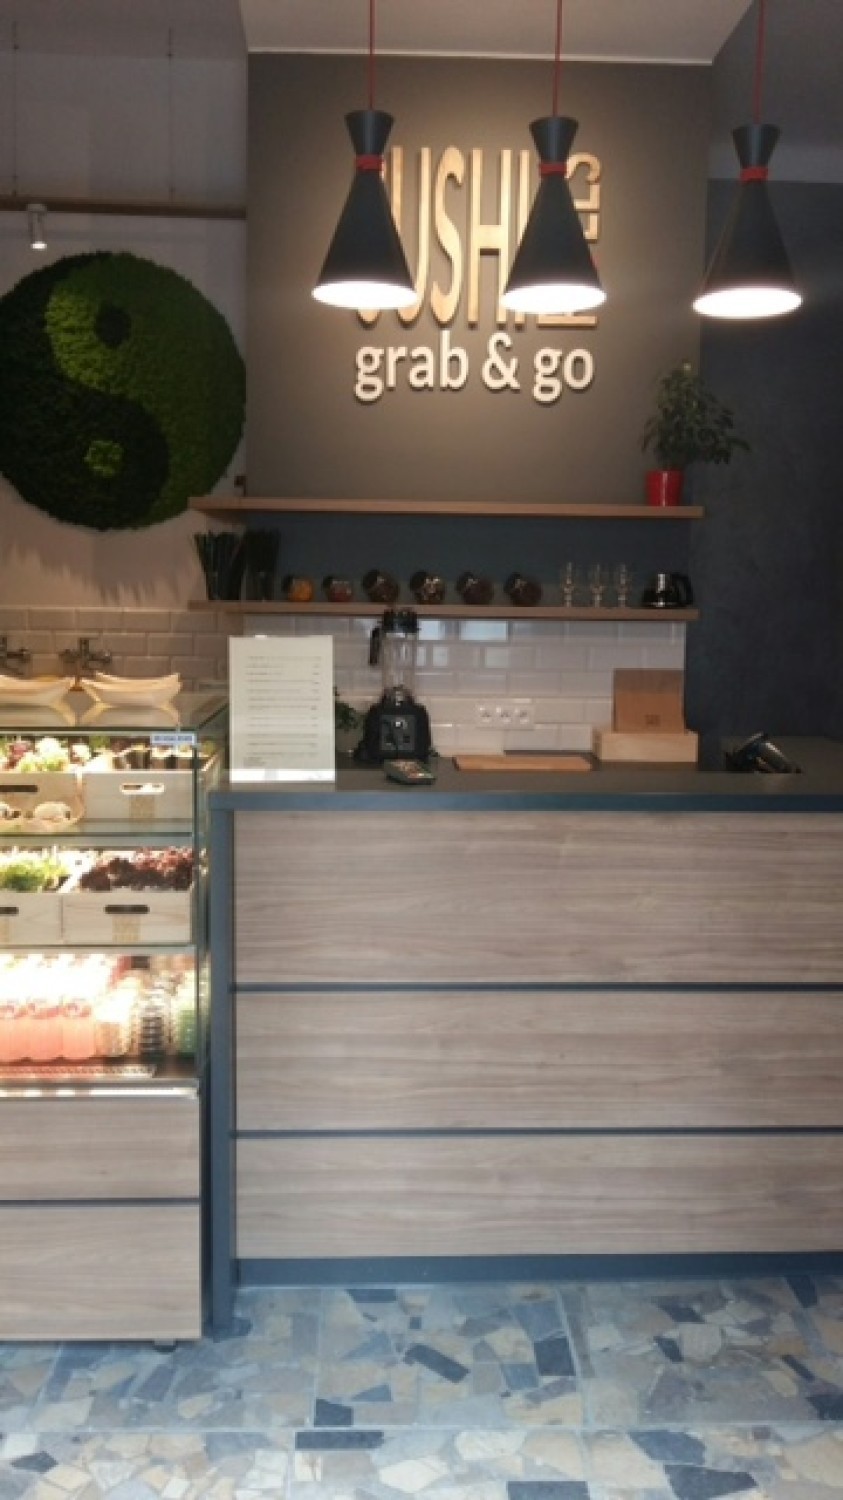 W Krakowie zjemy sushi rolki - nowy lokal SushiRolls Grab&go [ZDJĘCIA]